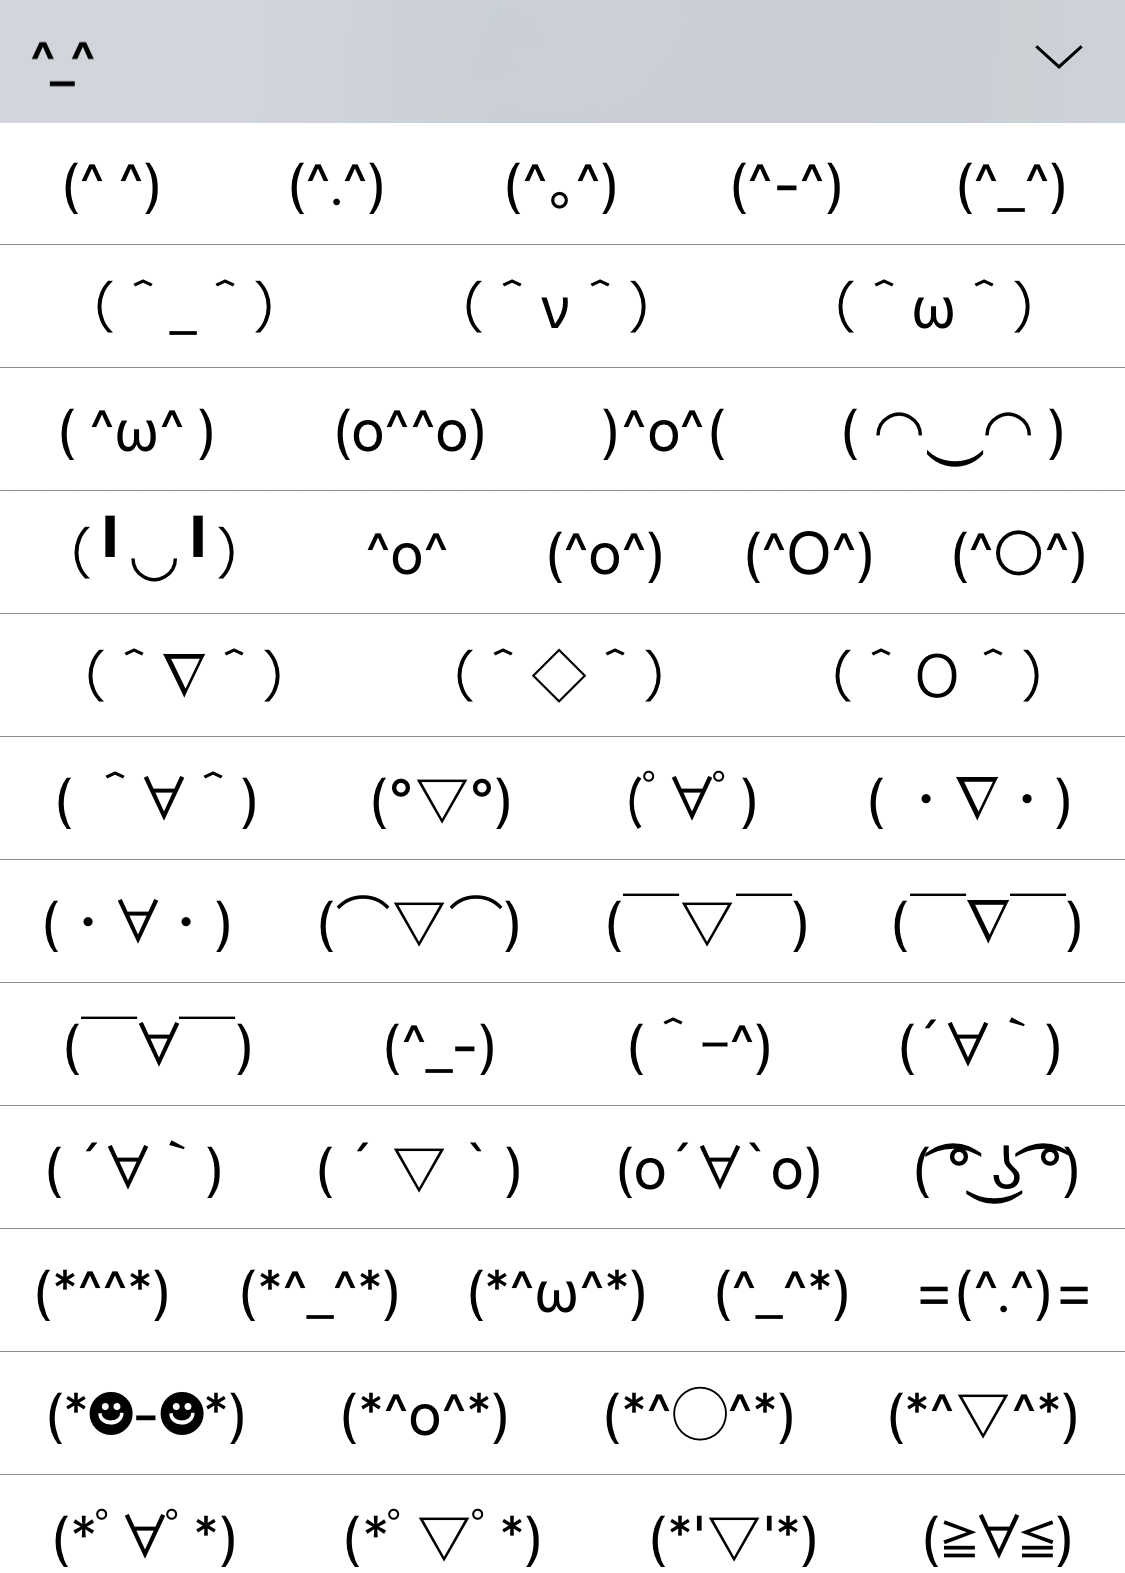 Face emoji keyboard actually you can